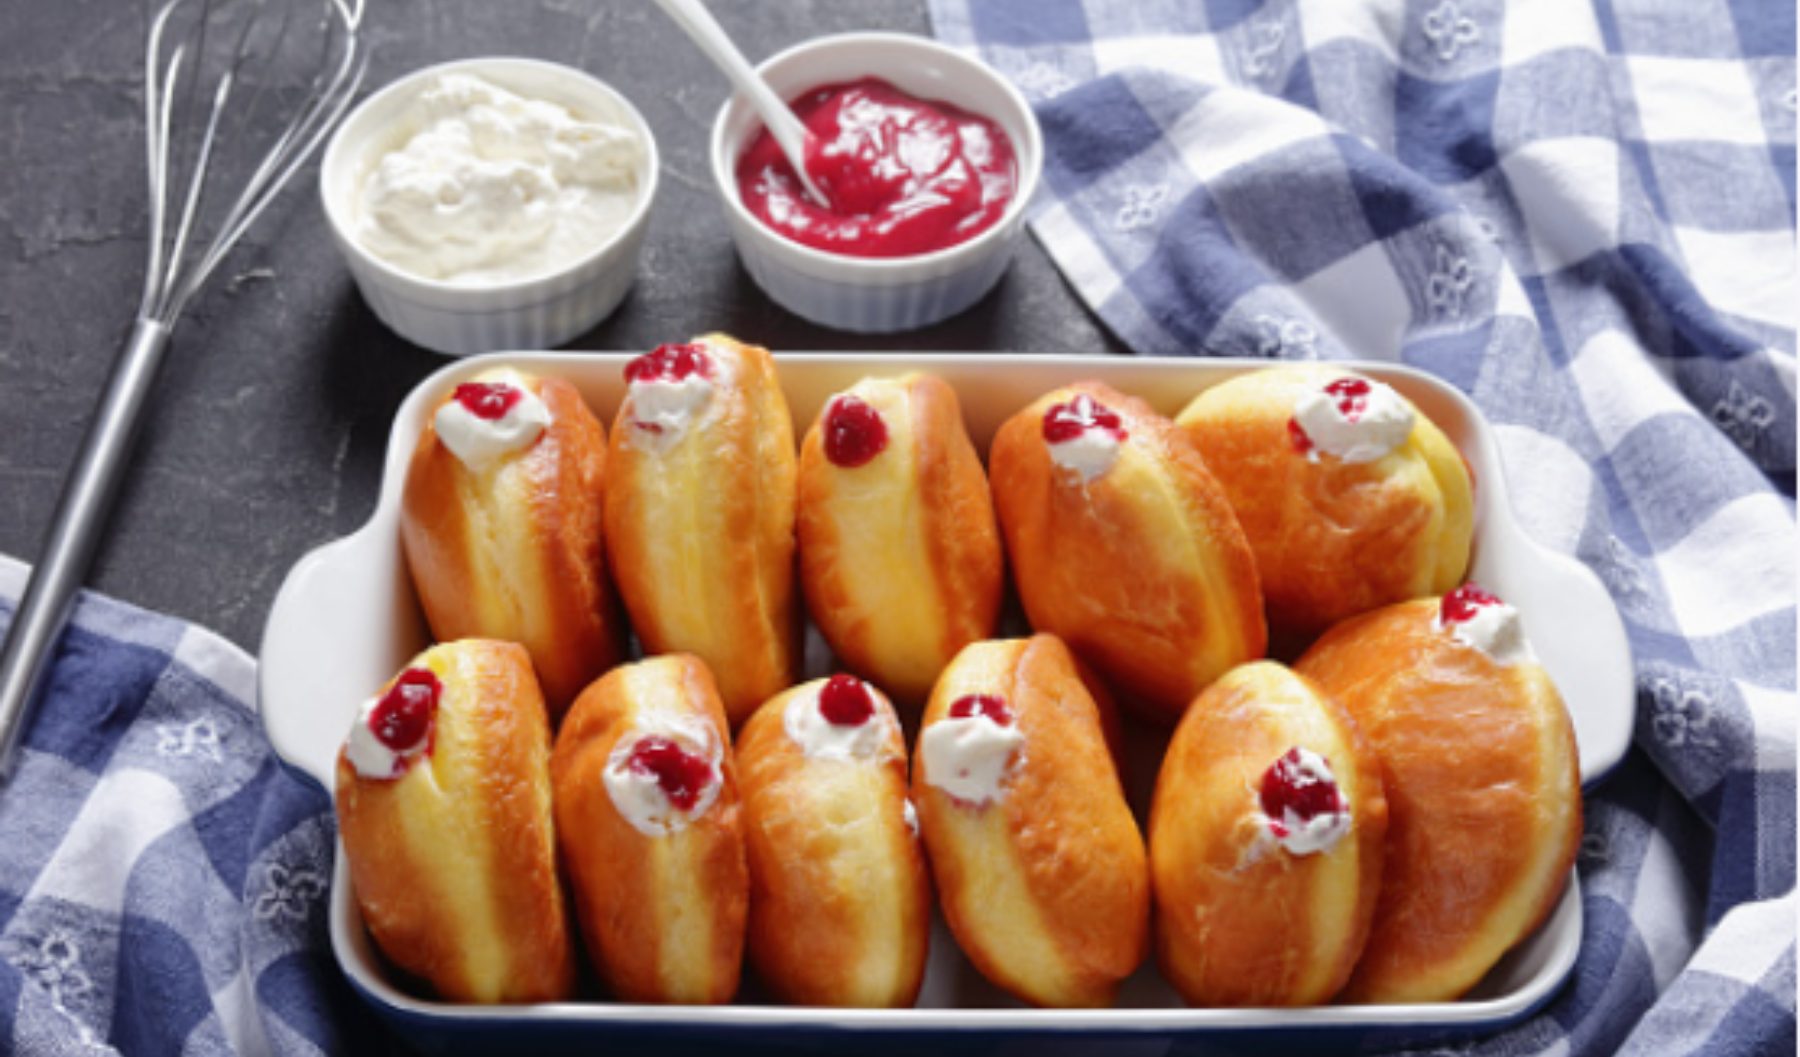 Donuts rellenos de crema al microondas, receta de pastelería rápida